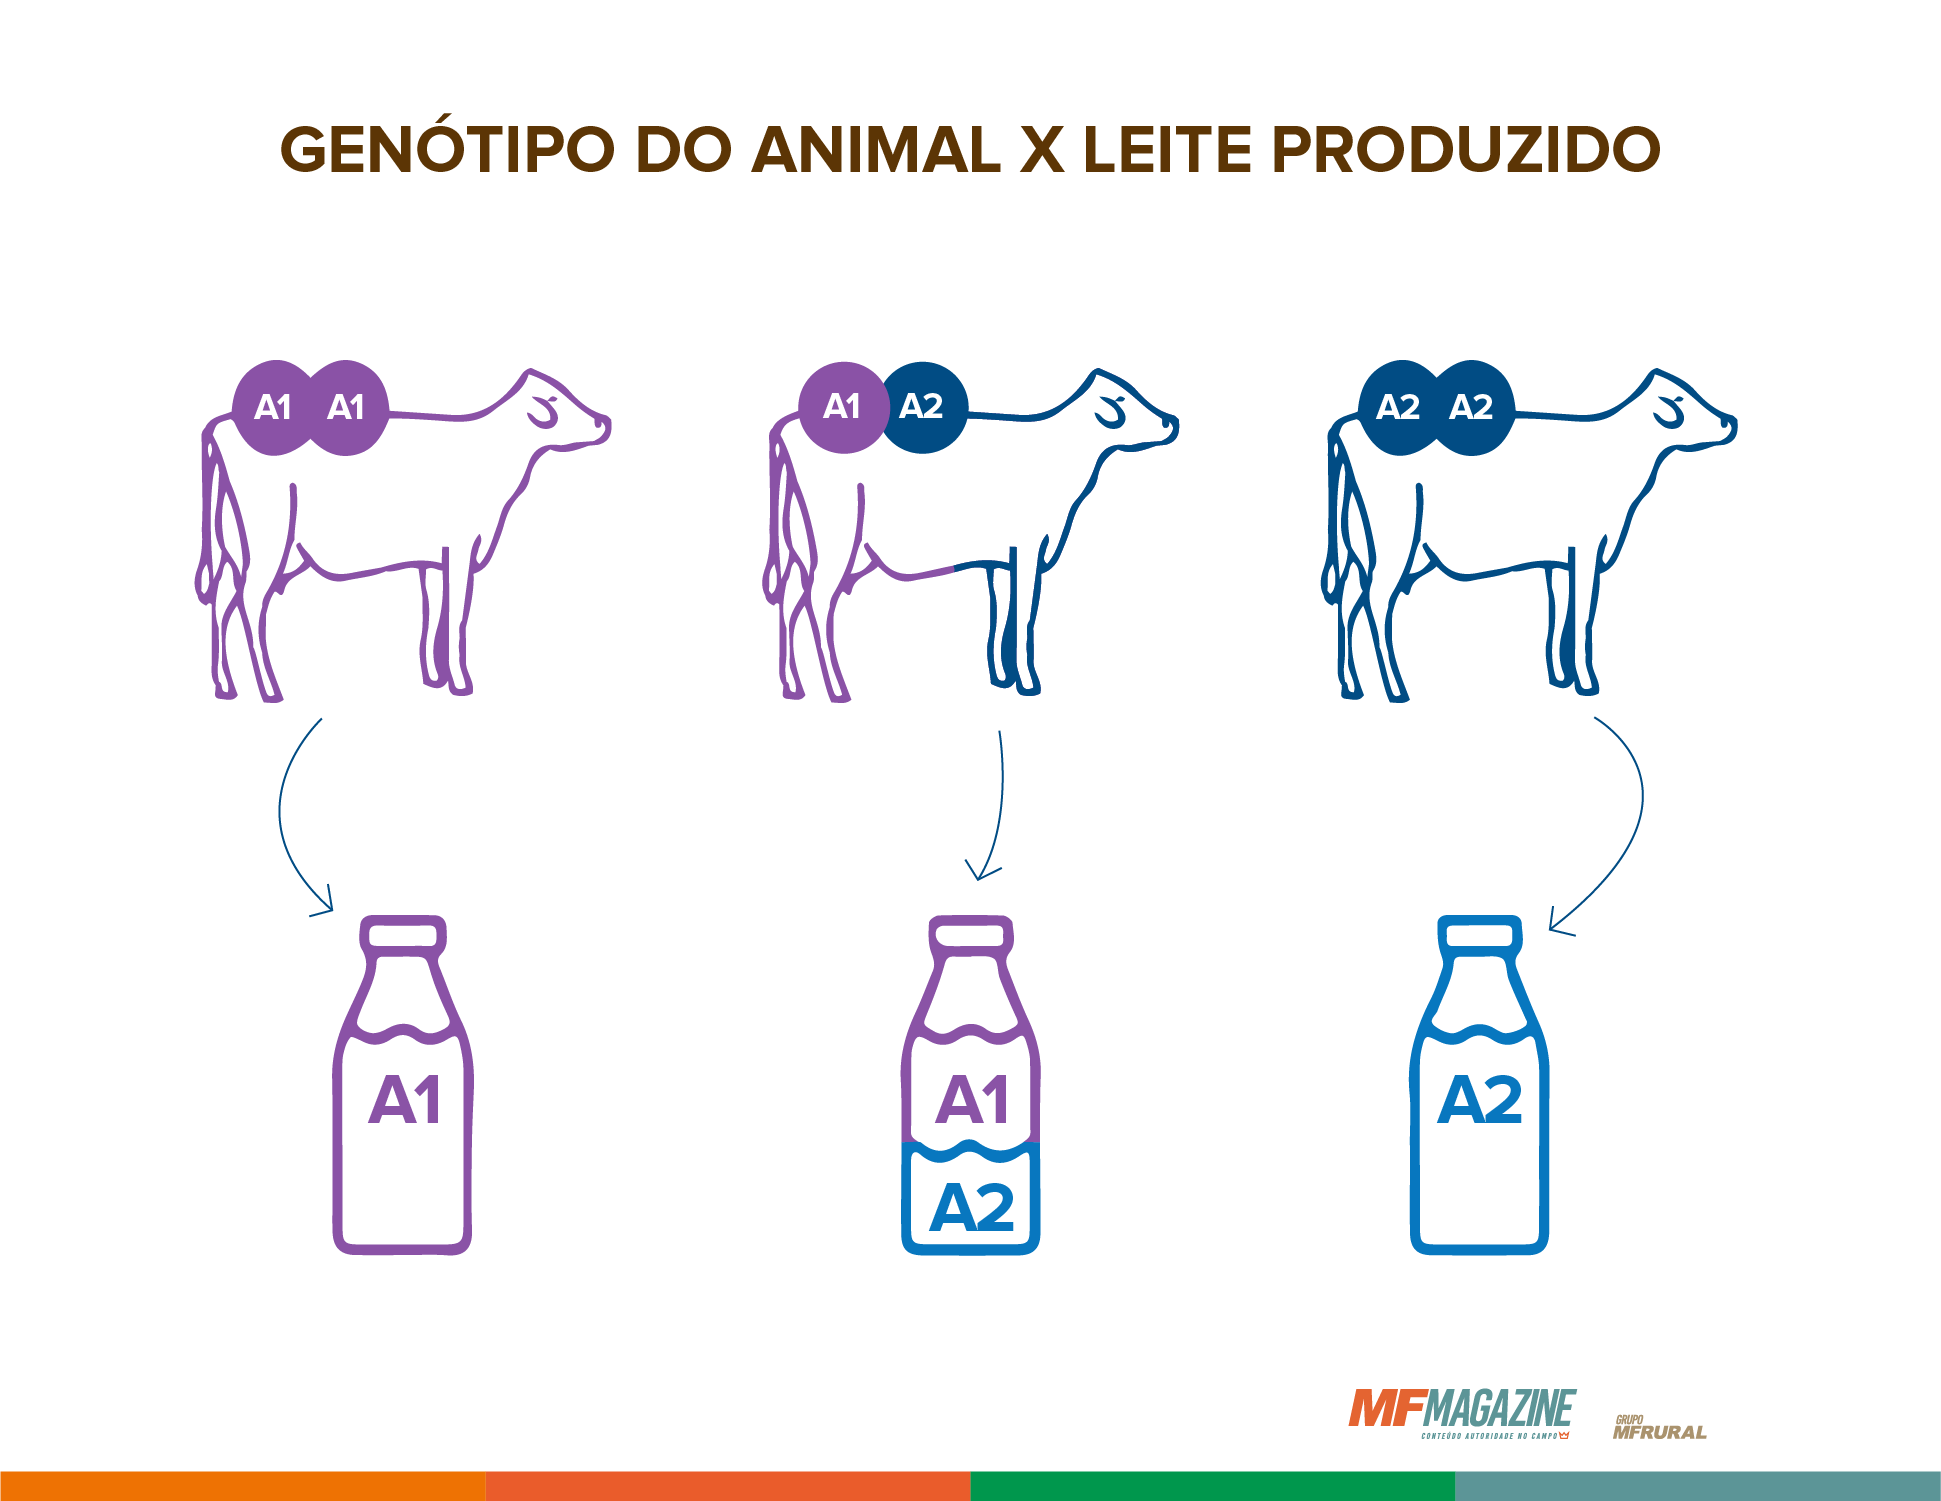 Tipo de leite produzido de acordo com o genótipo de cada animal. Vacas com beta-caseína A1 e A1/A2 produzem leite A1 e aqueles com apenas beta-caseína A2 produzem leite A2